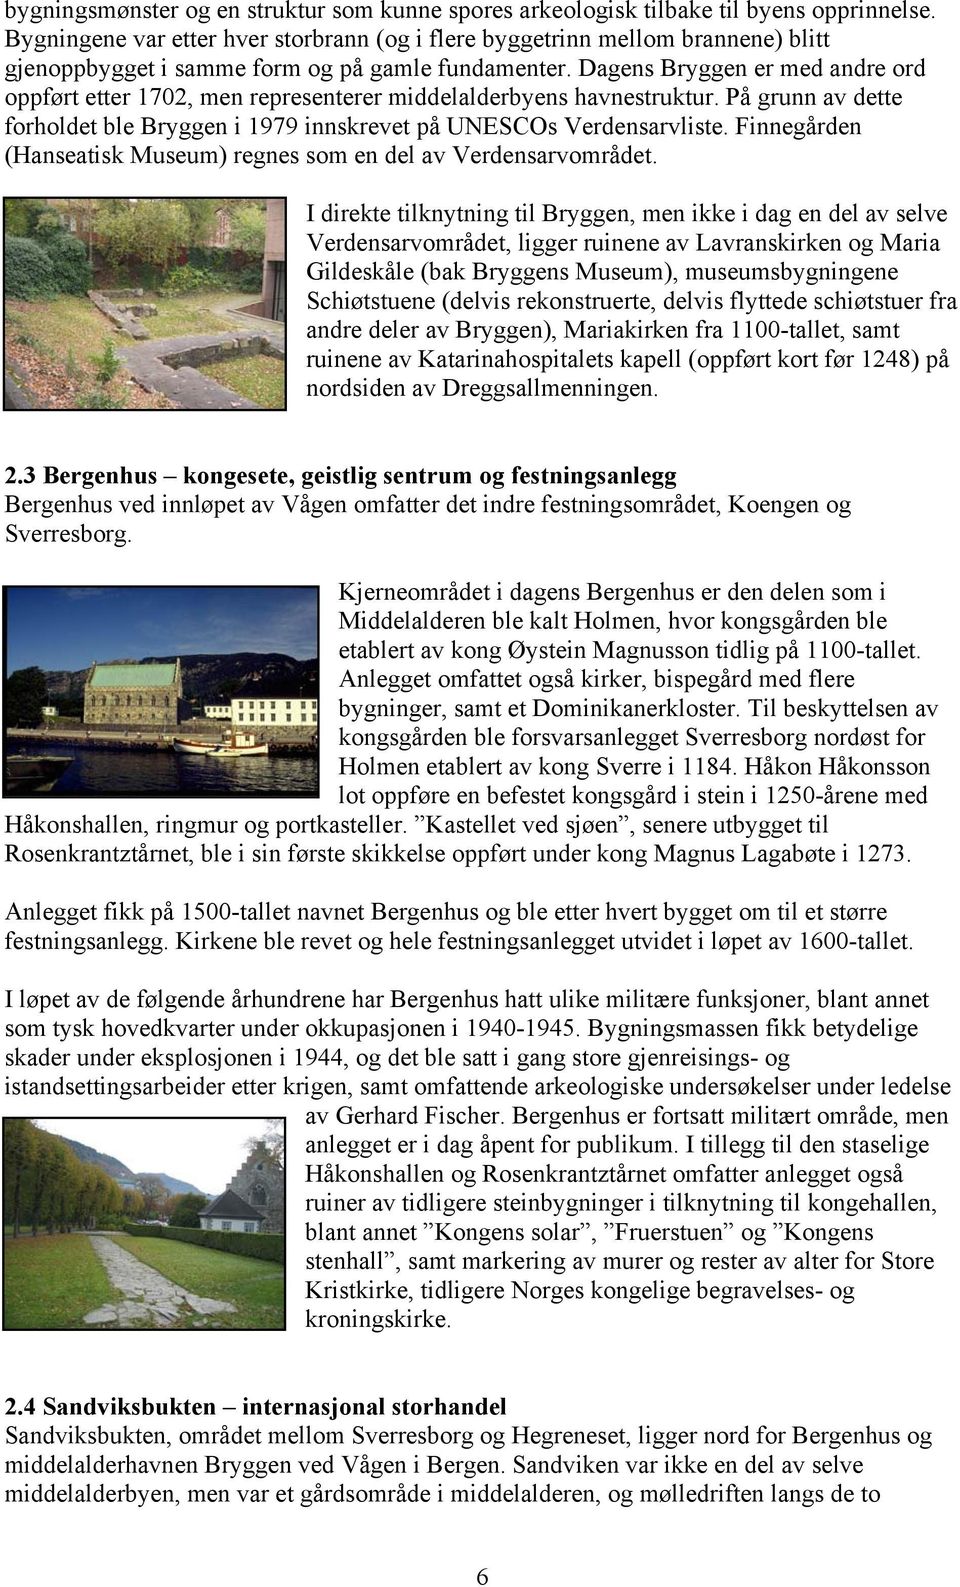 Dagens Bryggen er med andre ord oppført etter 1702, men representerer middelalderbyens havnestruktur. På grunn av dette forholdet ble Bryggen i 1979 innskrevet på UNESCOs Verdensarvliste.